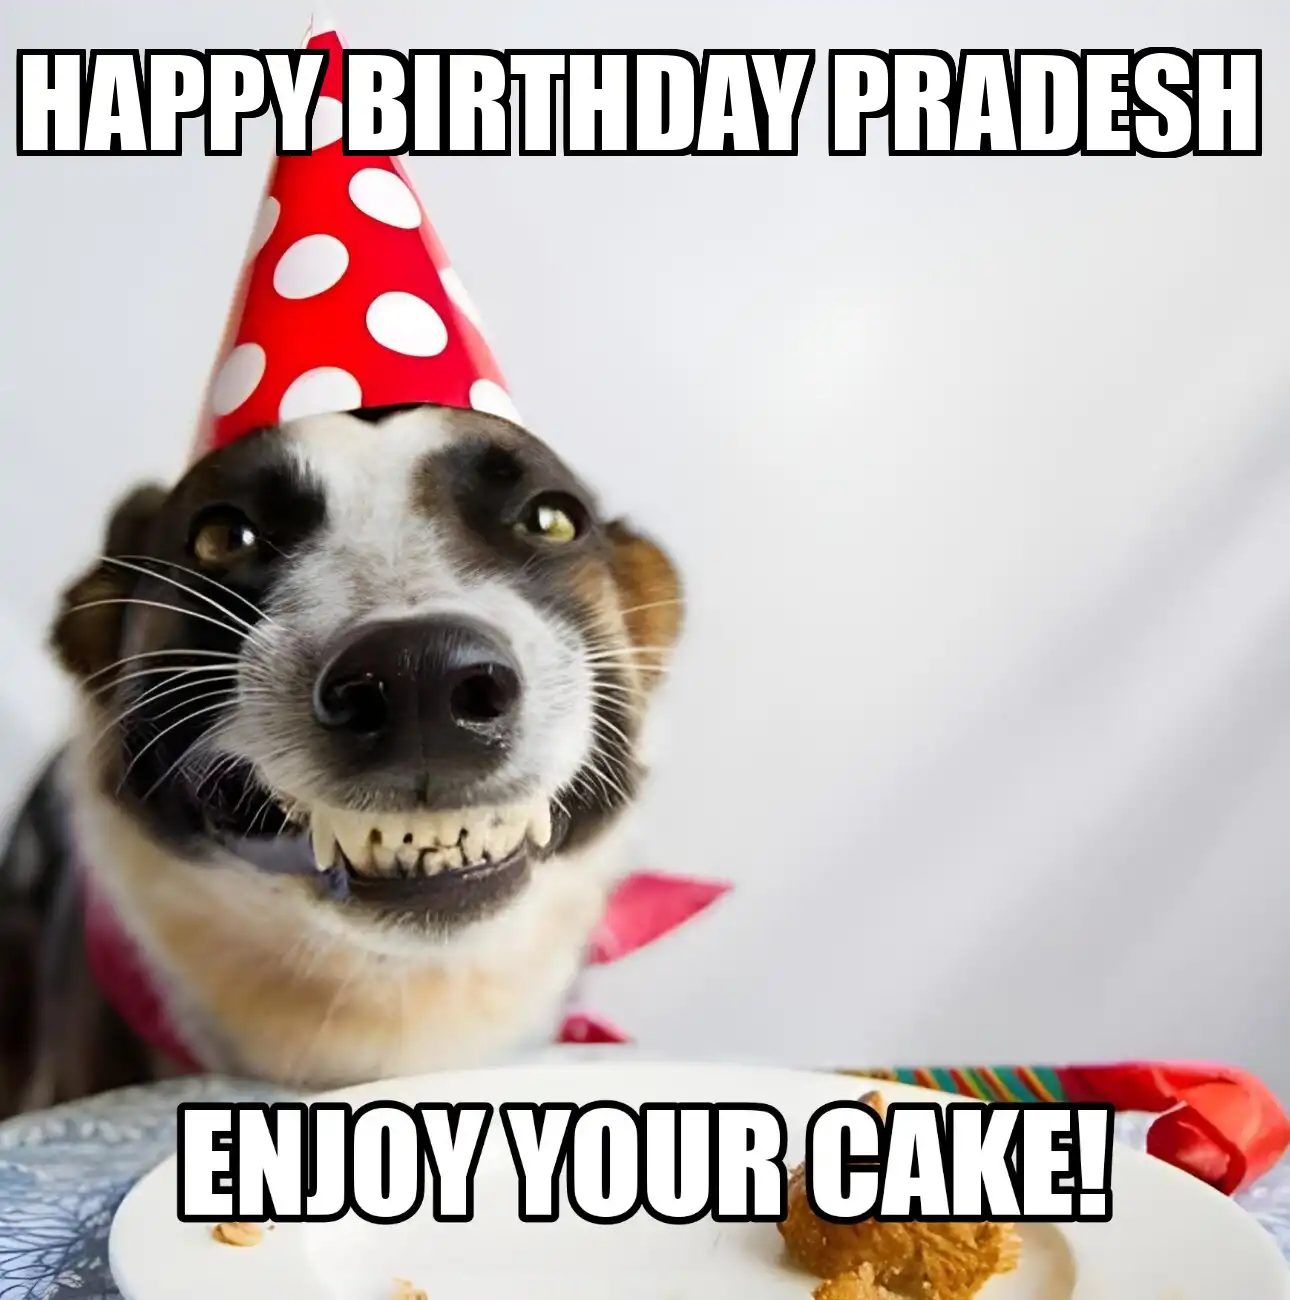 Happy Birthday Pradesh Enjoy Your Cake Dog Meme